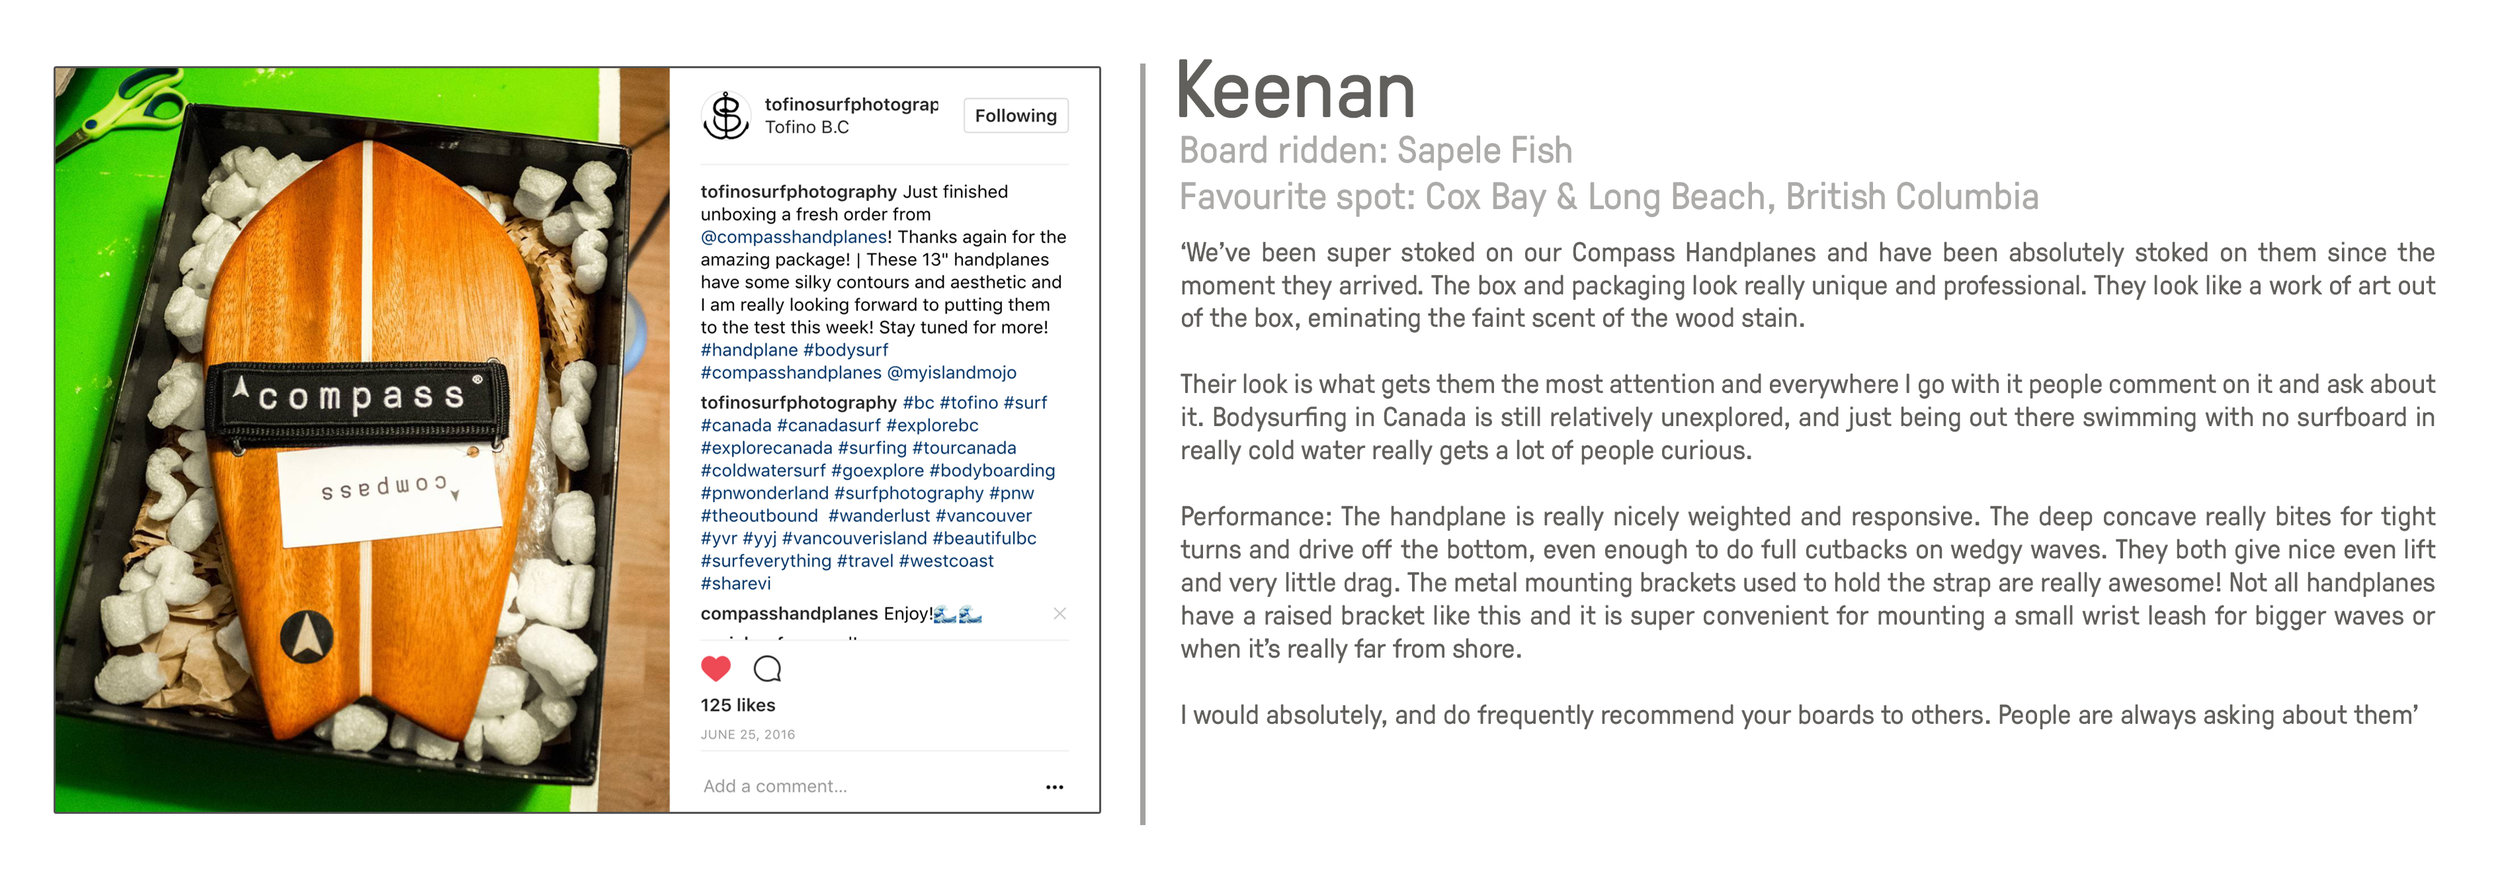 Keenan review.jpg